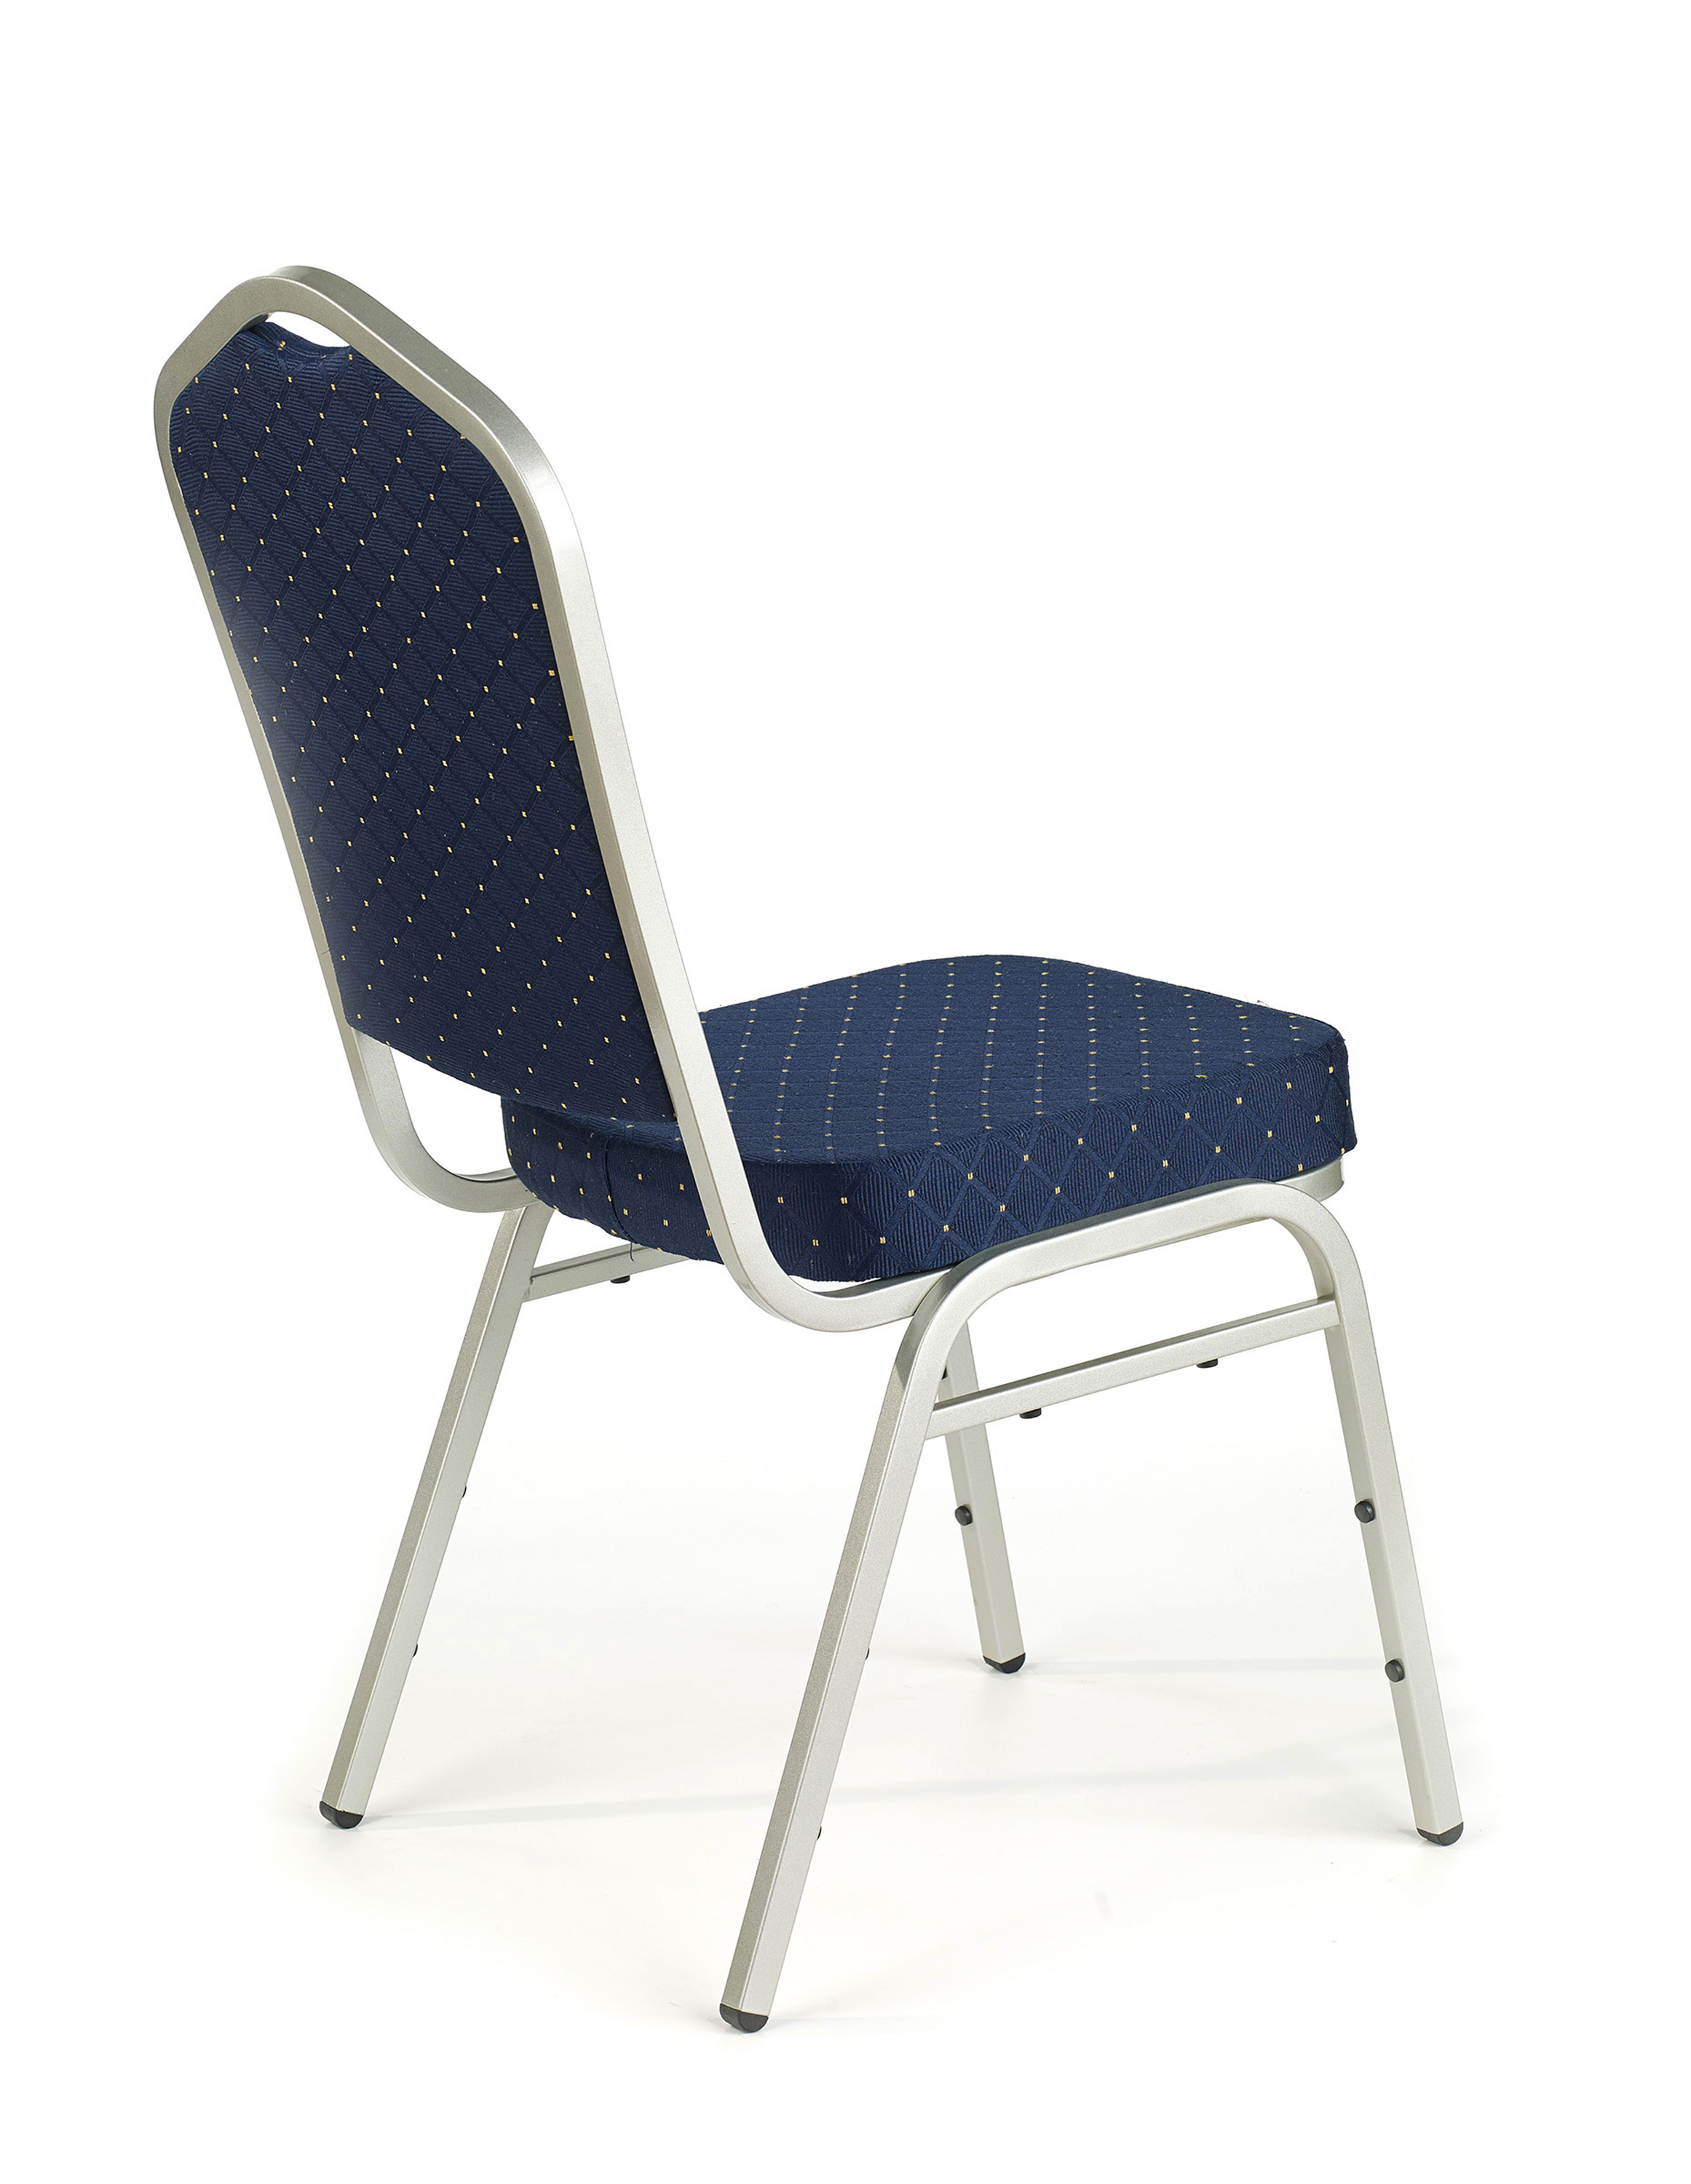 K66S Židle Modrá, Konstrukce Stříbrná k66s Židle Modrý, Rošt Stříbrný